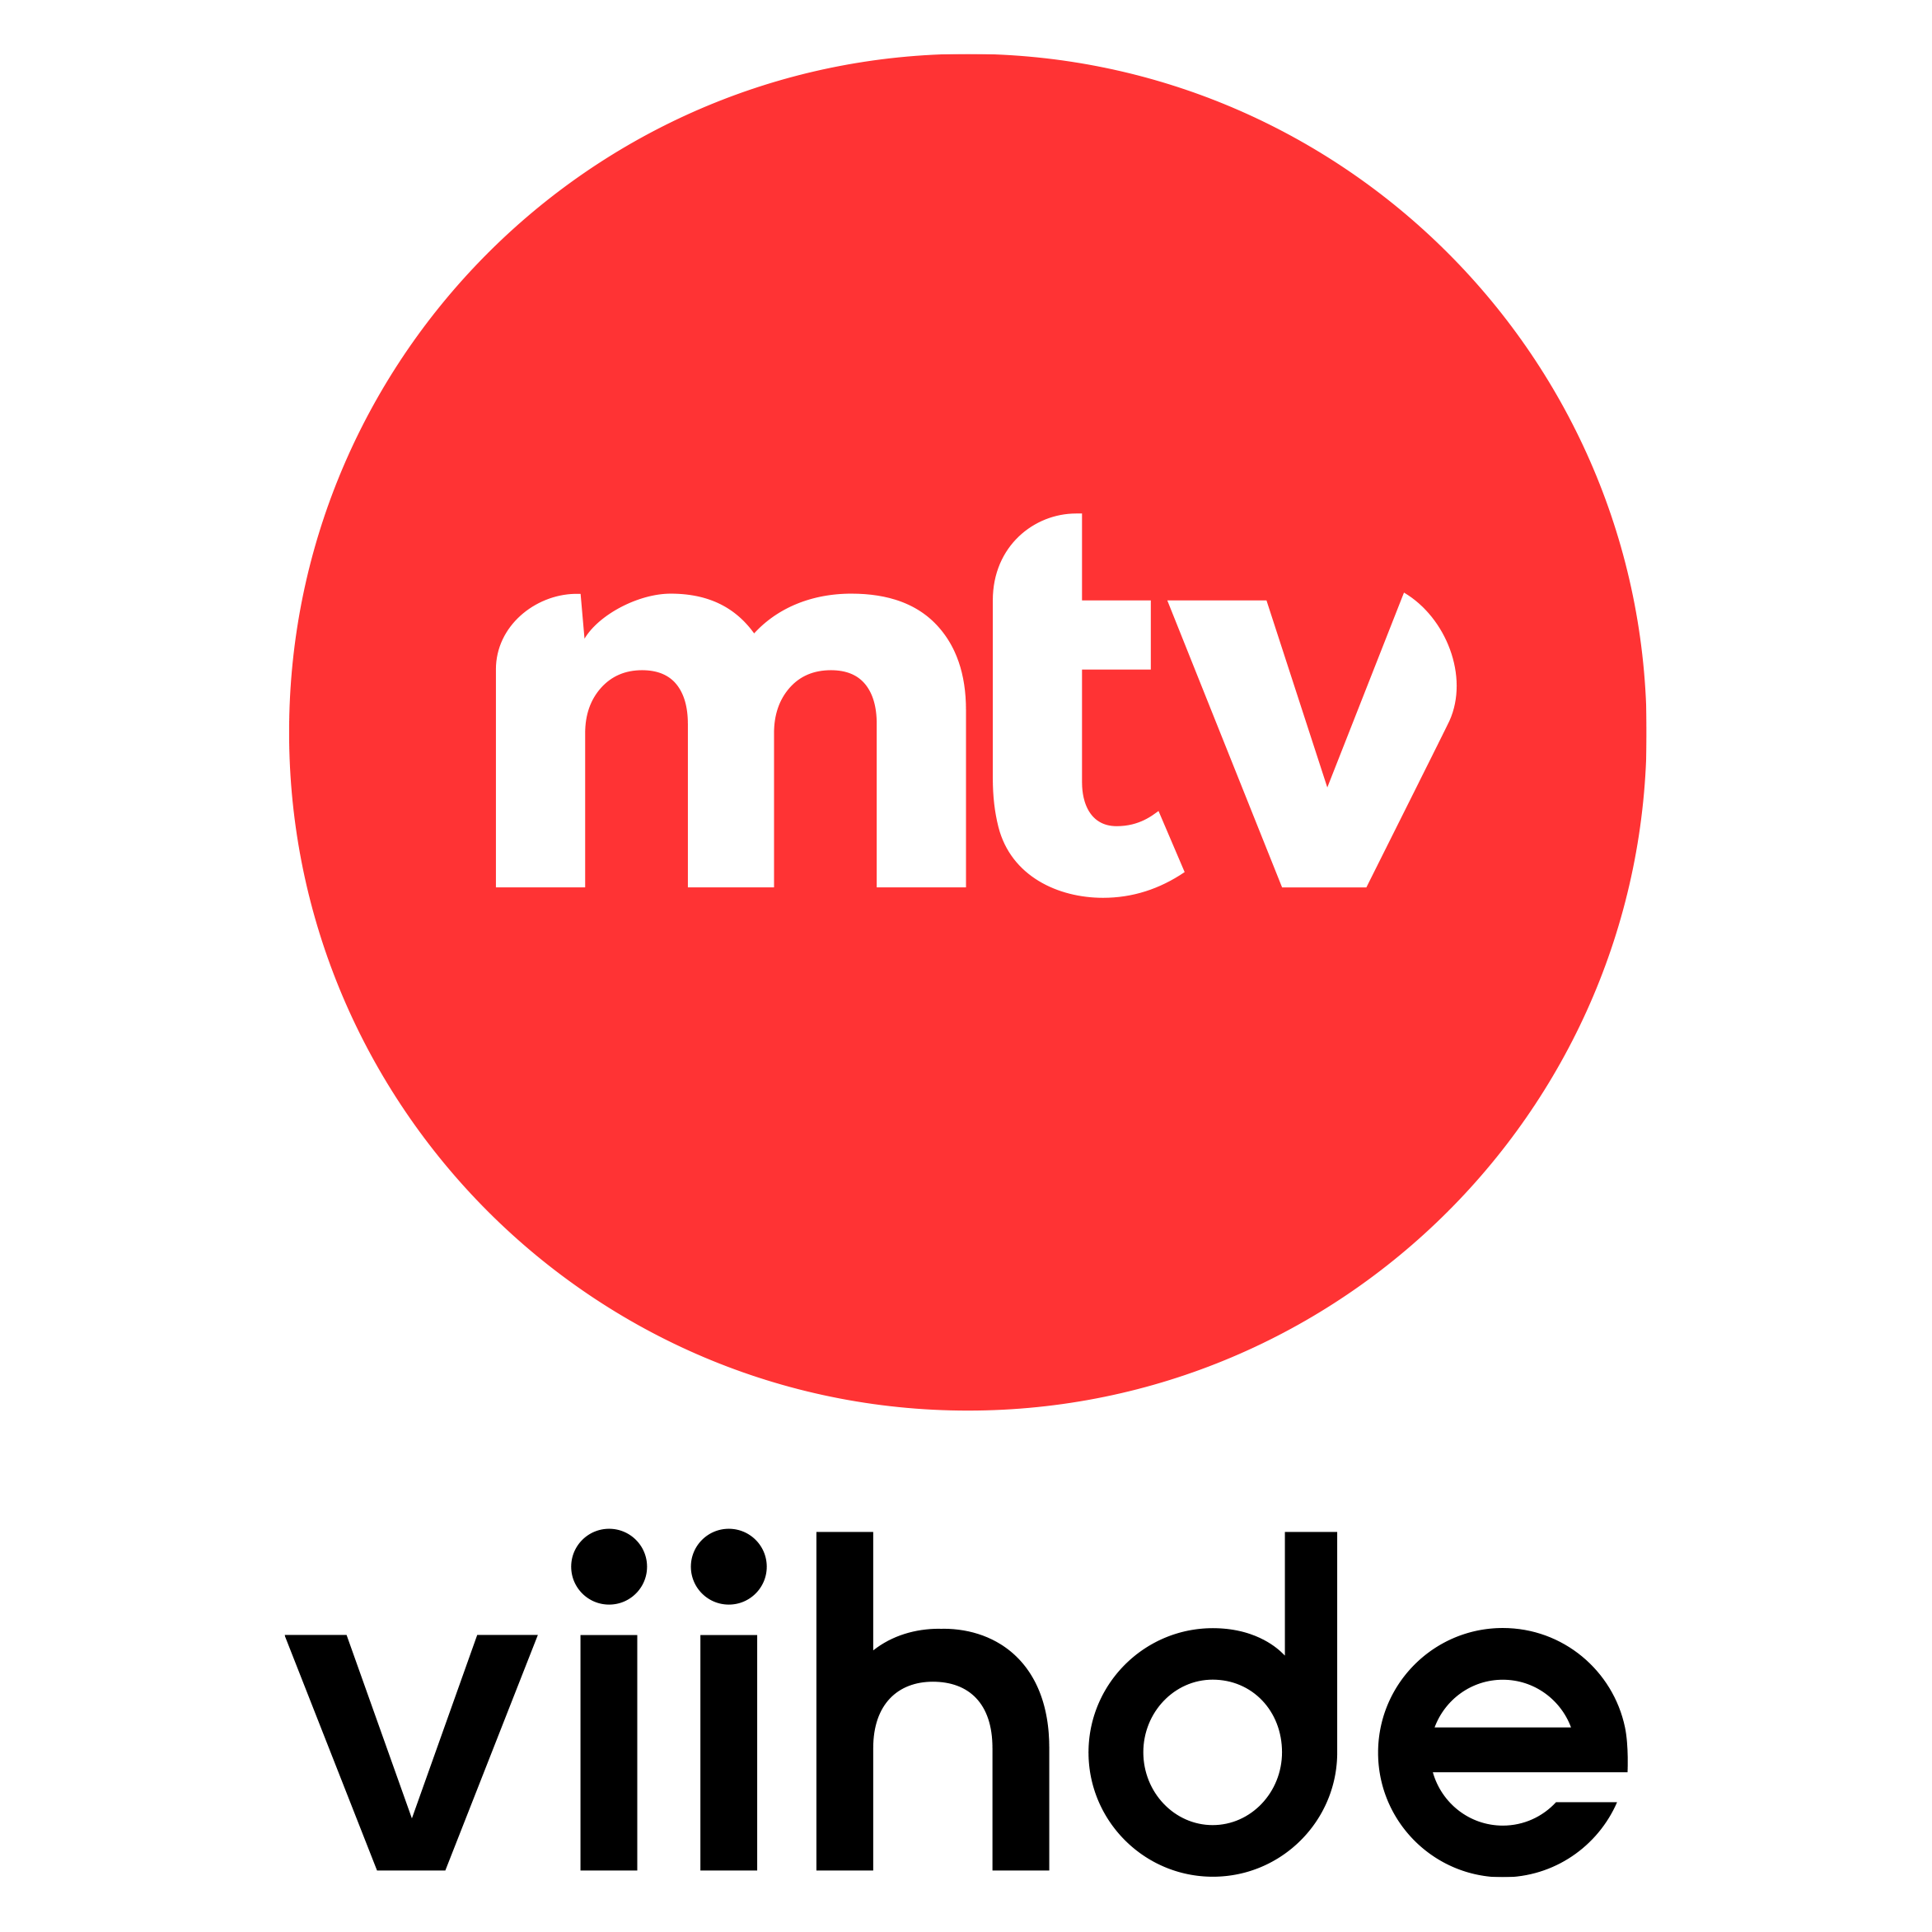 MTV Viihde